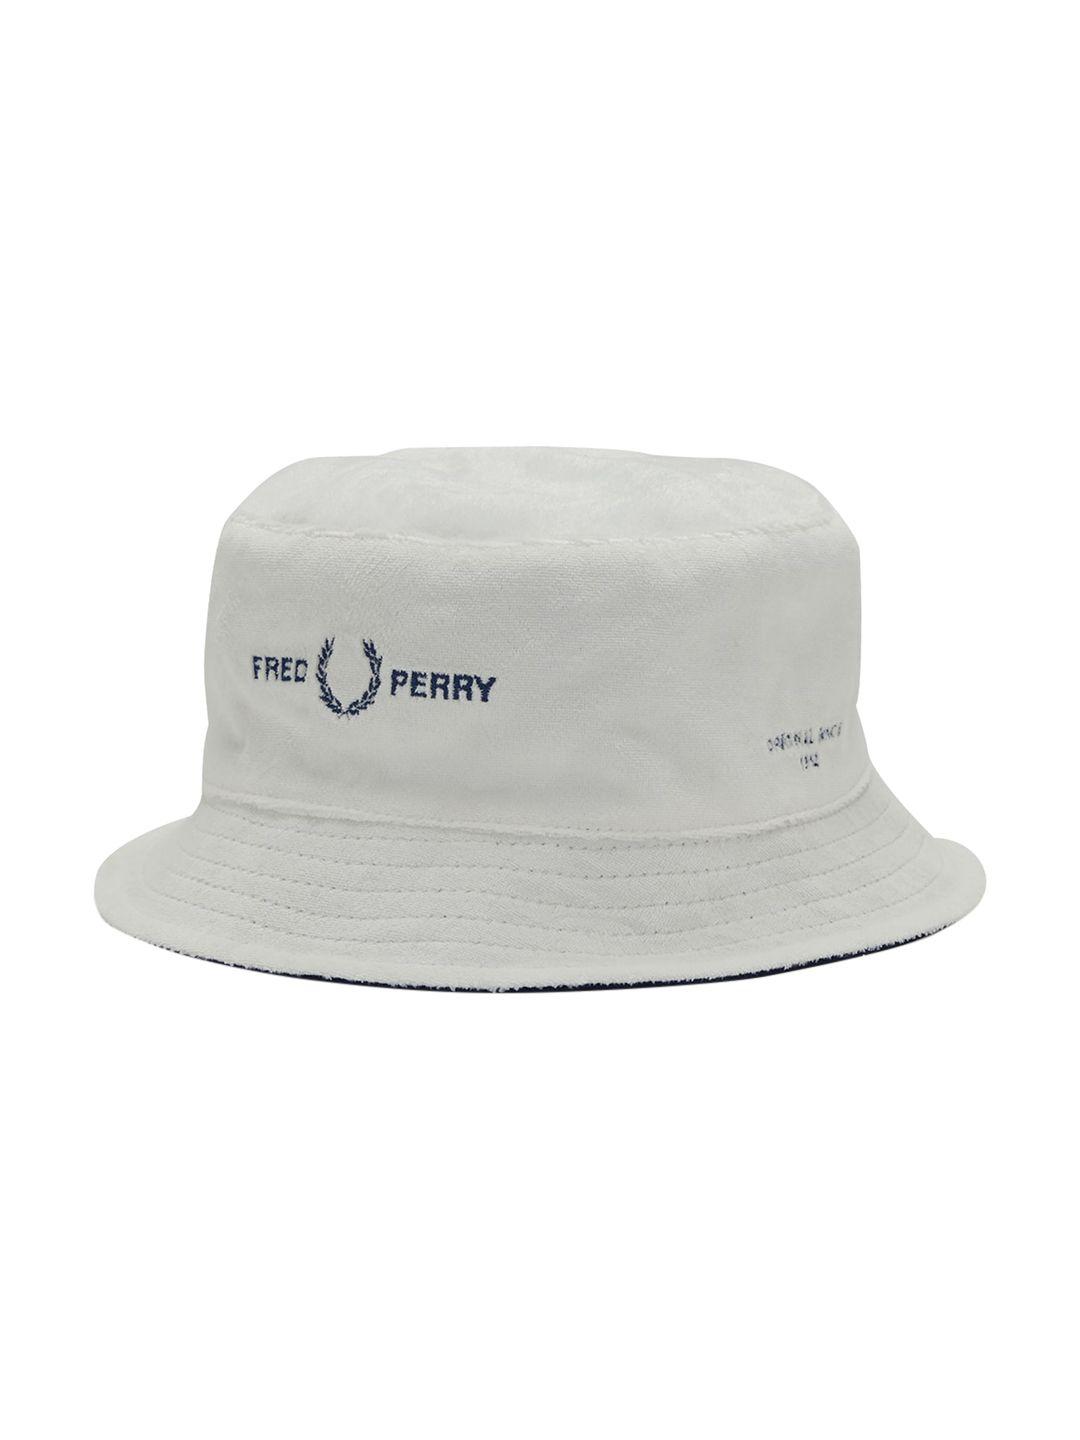 fred perry men white reversible visor cap